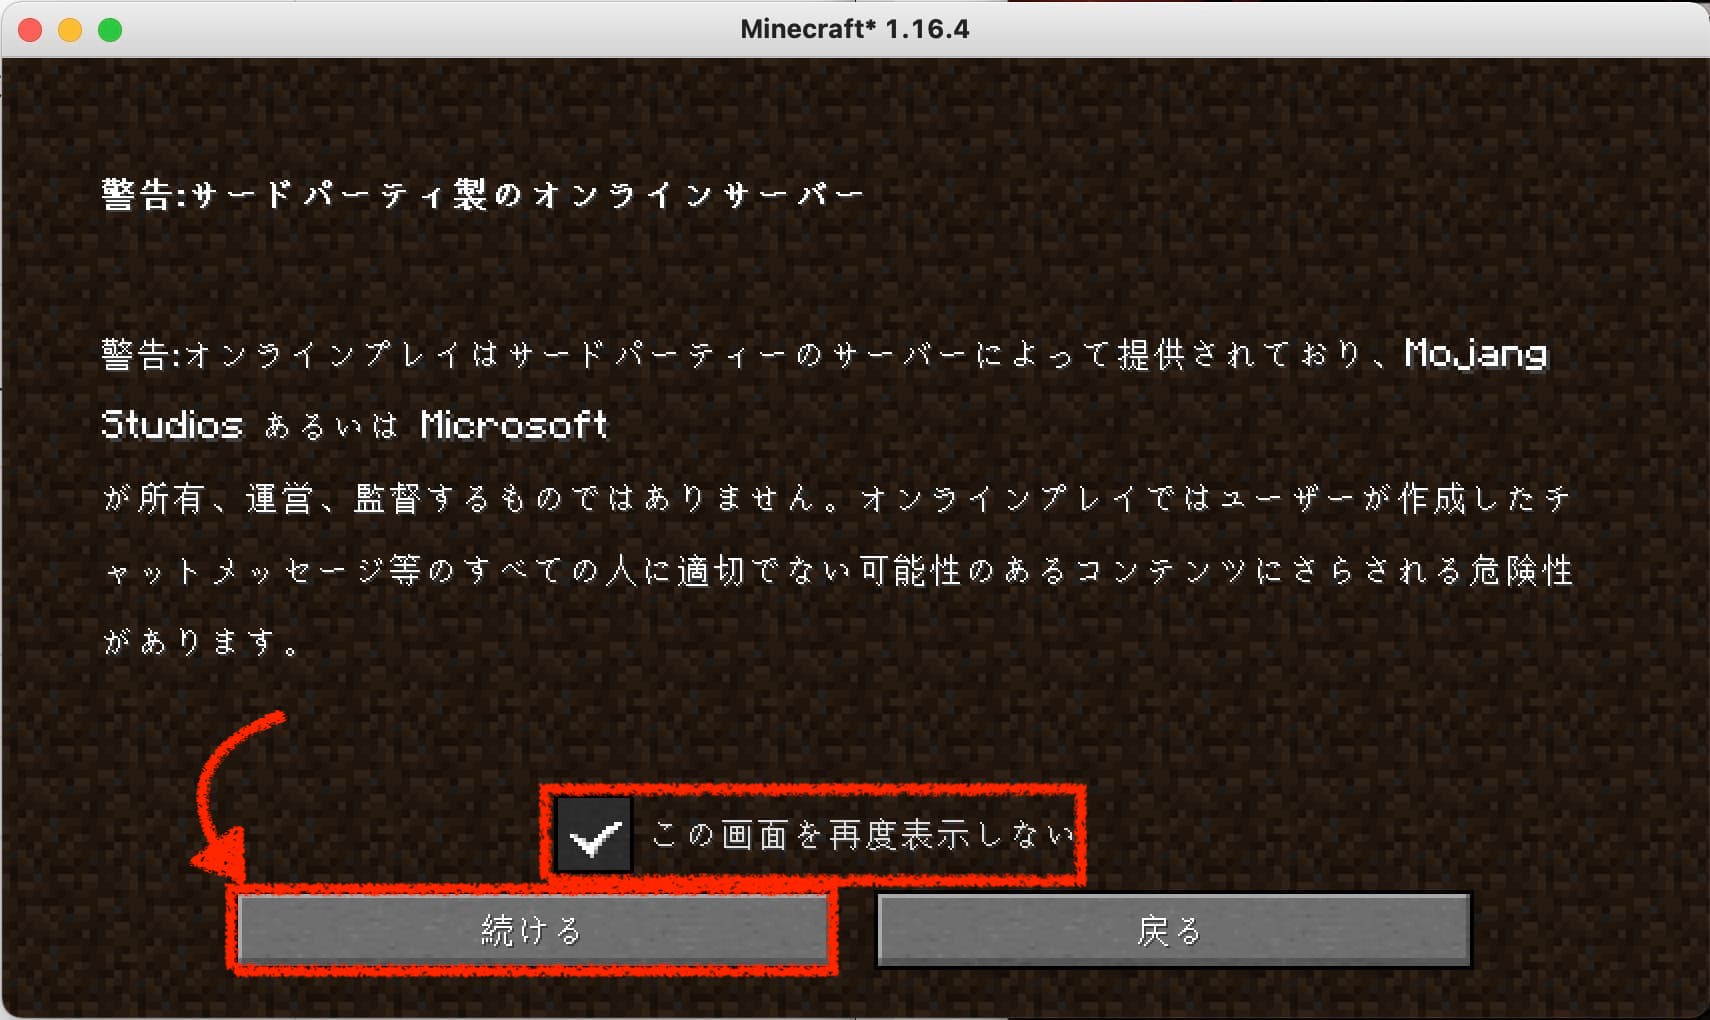 失敗しない Conoha Vpsでマイクラmodサーバーを立てる方法 Sukiburo